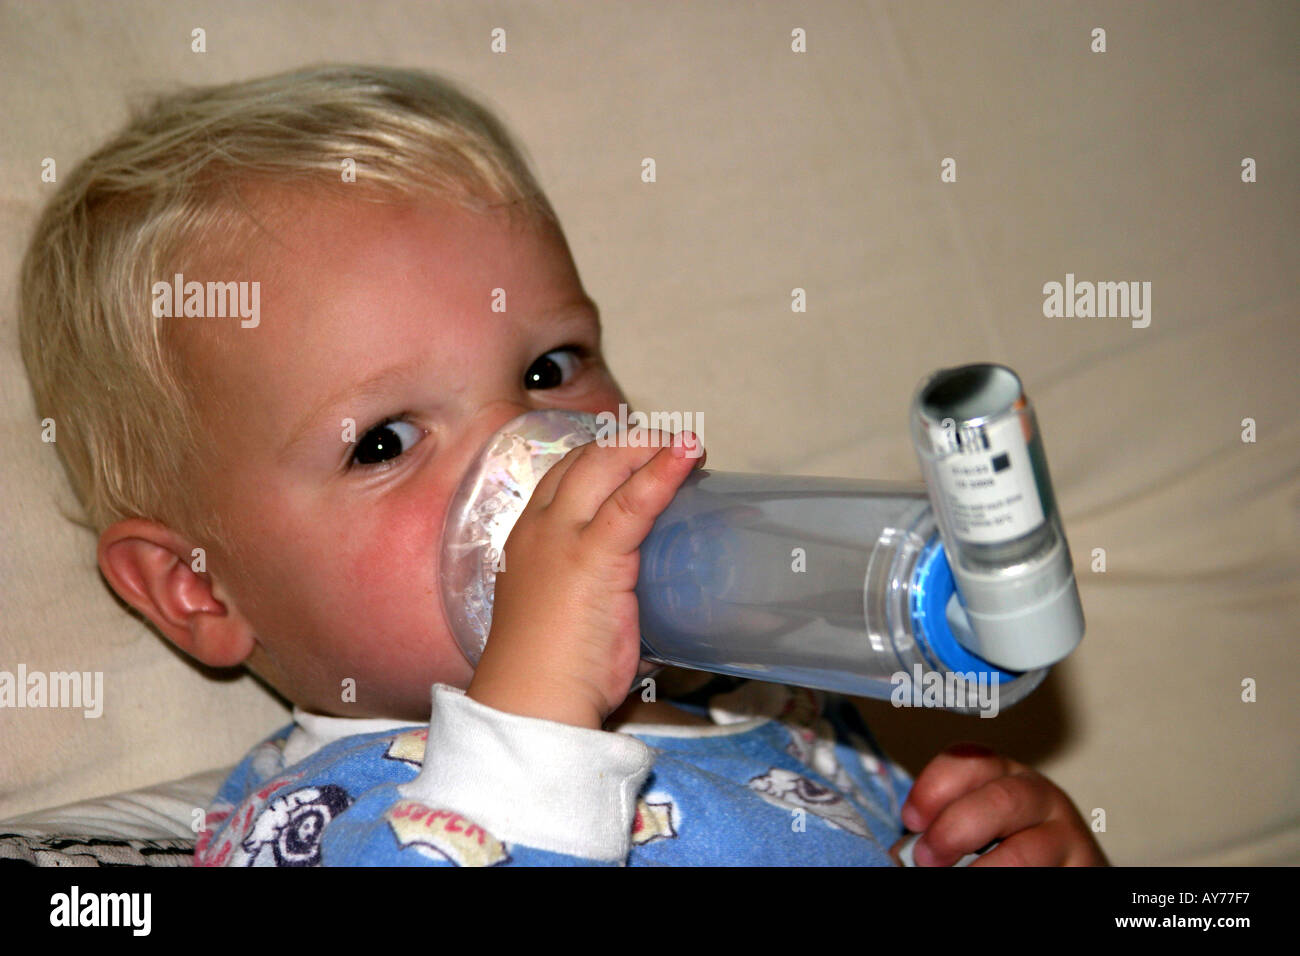 Petit garçon de prendre des médicaments pour des problèmes respiratoires allergies Asthme etc Banque D'Images